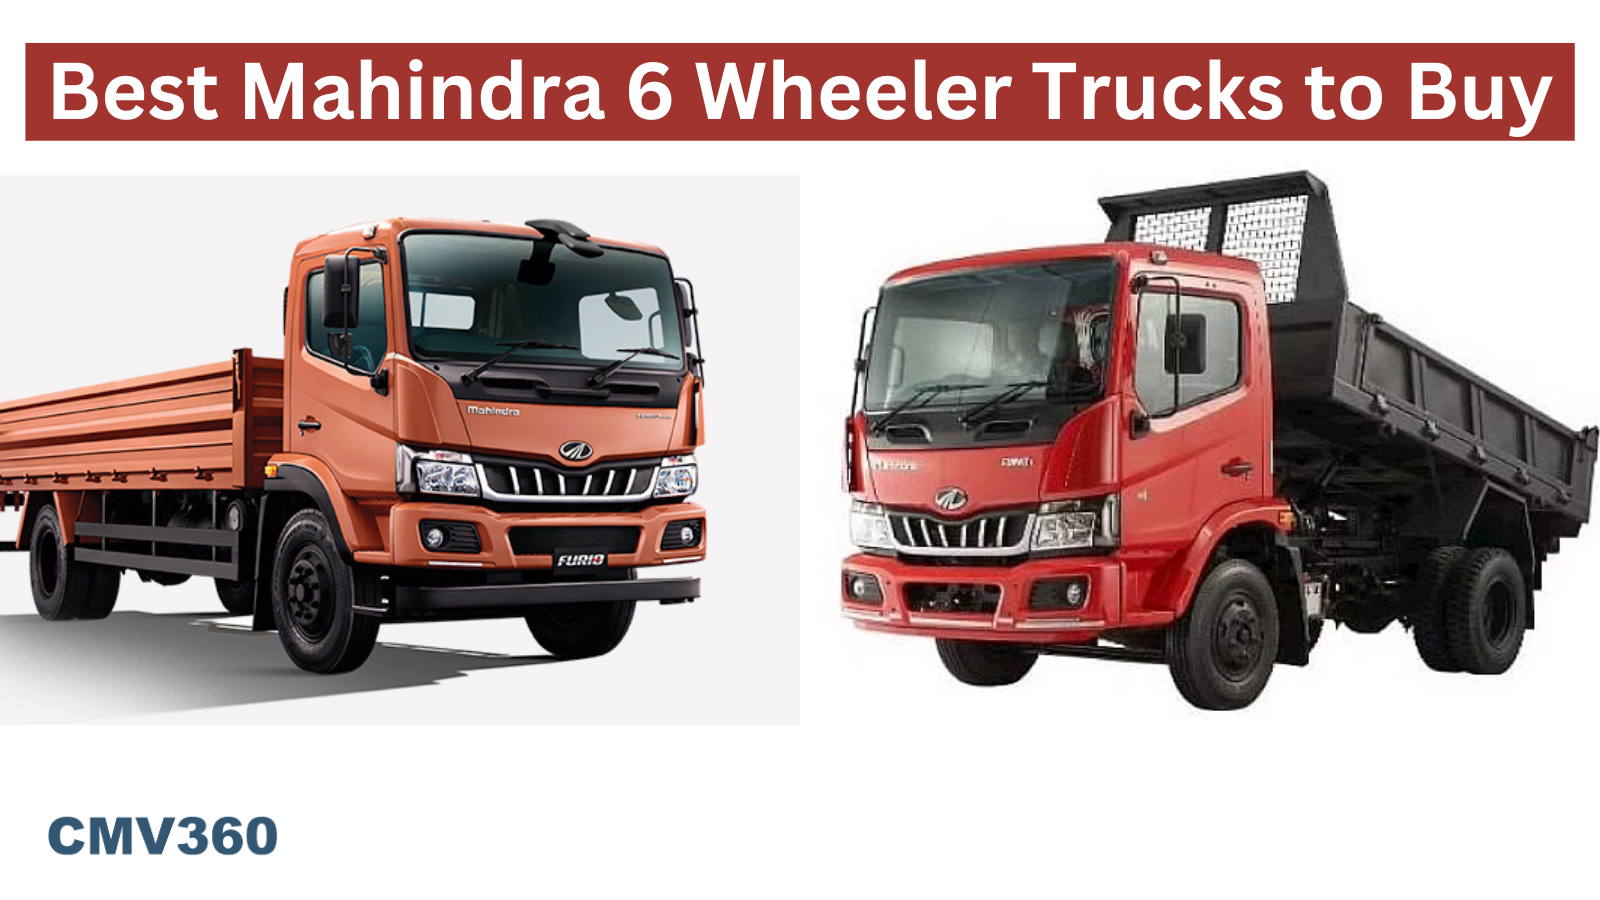 Best Mahindra 6 Wheeler Trucks to Buy